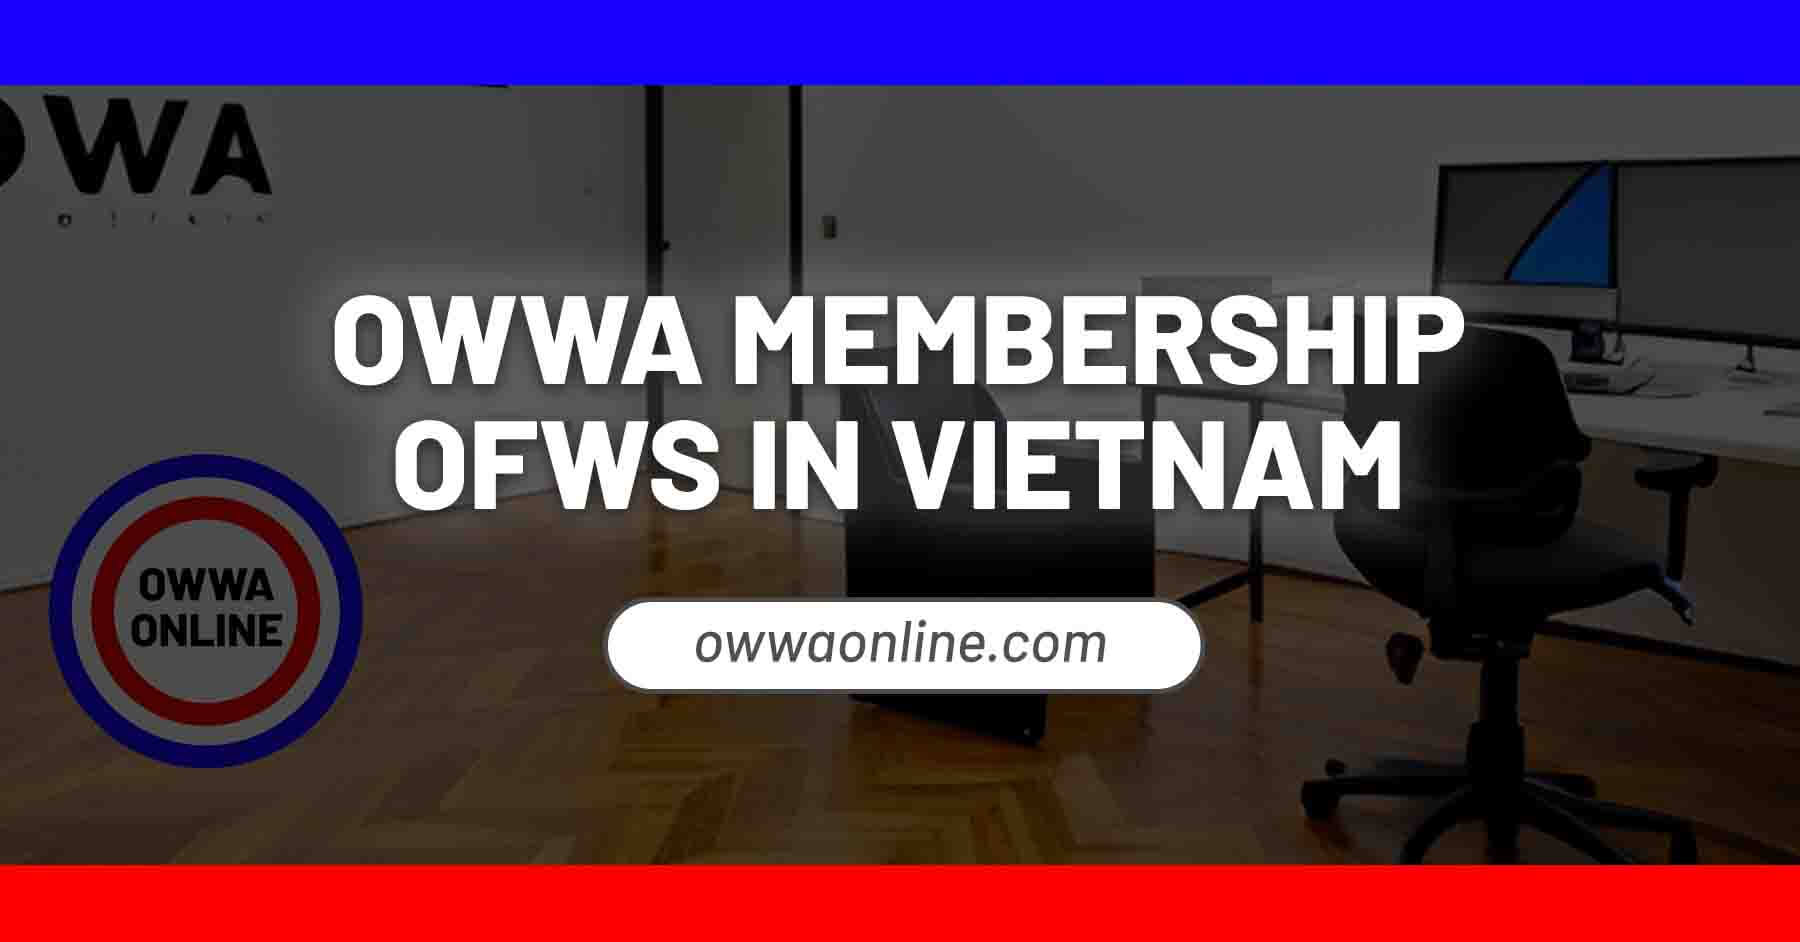 owwa membership application renewal in Vietnam